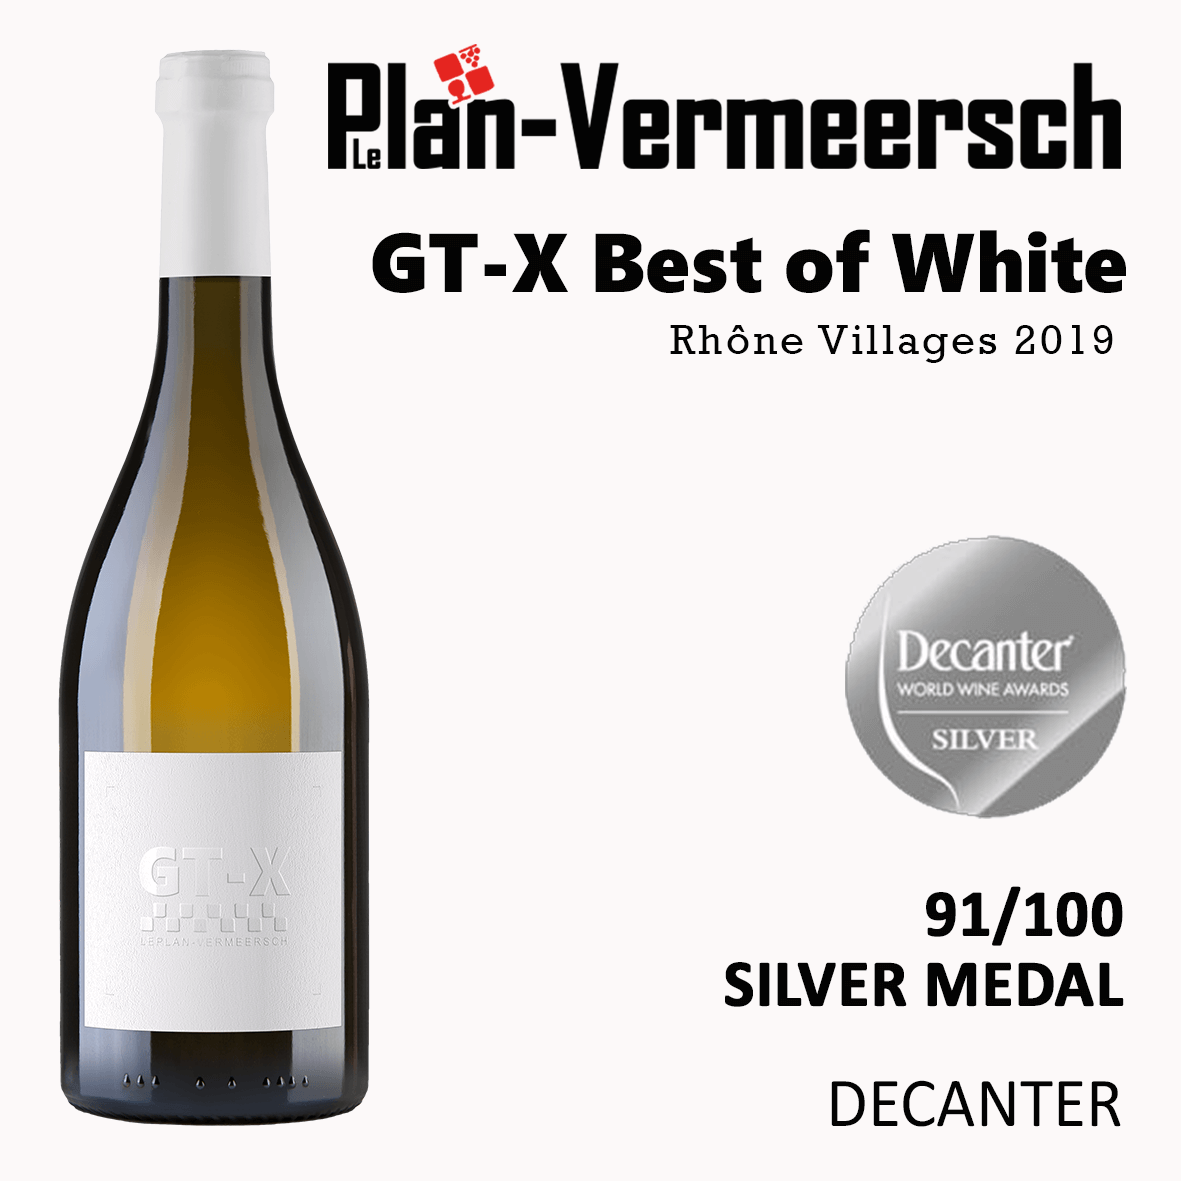 Bouteille de vin d'assemblage clairette viognier, roussane GT-X best of white silver medal decanter LePlan-.Vermeersch